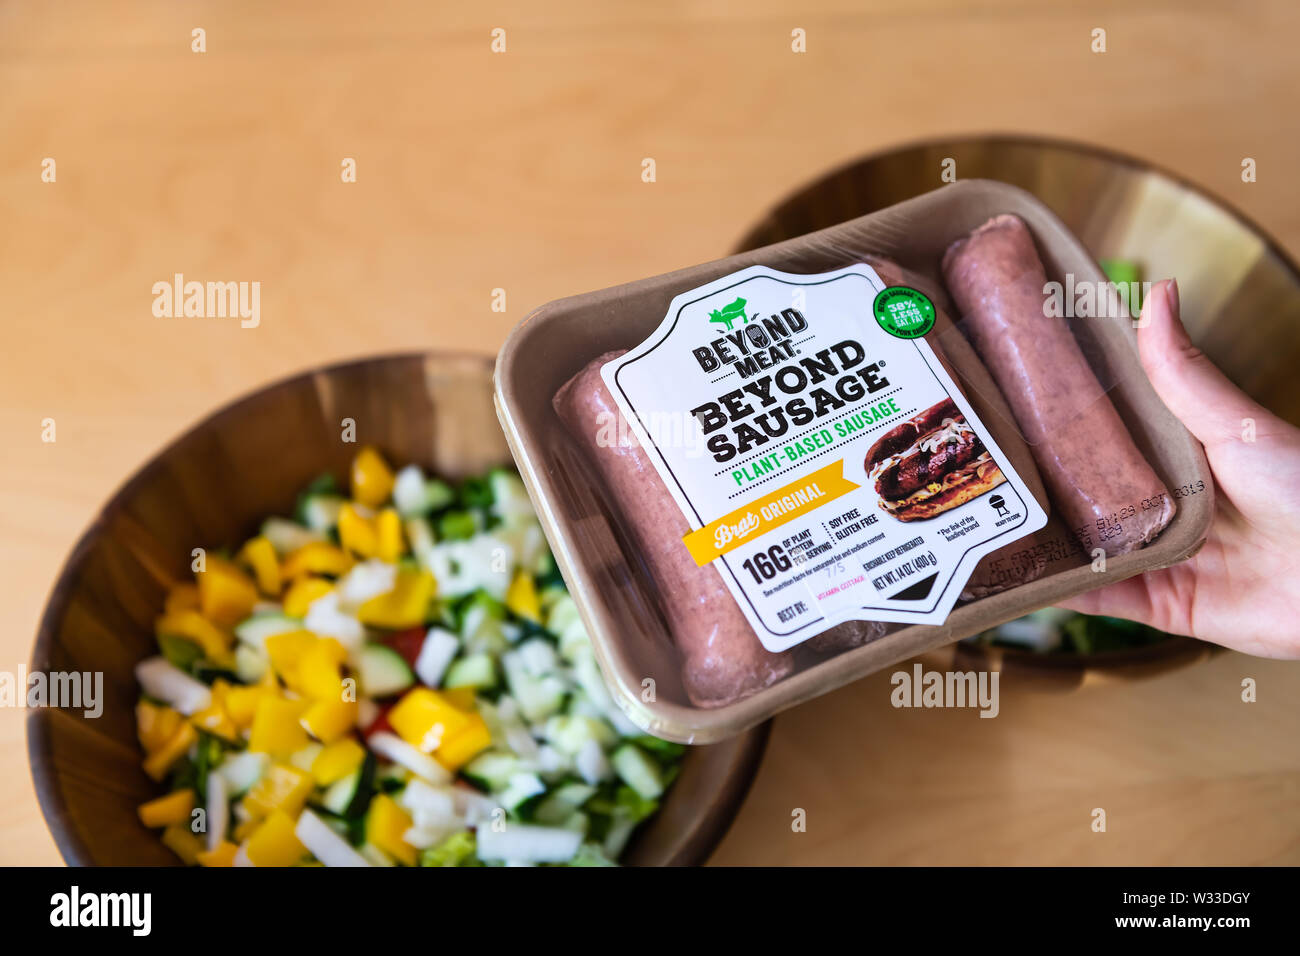 Aspen, Stati Uniti d'America - 29 Giugno 2019: oltre la salsiccia di carne a base di vegetali proteina brat pacchetto originale con la donna azienda brand dai contenitori per insalate Foto Stock